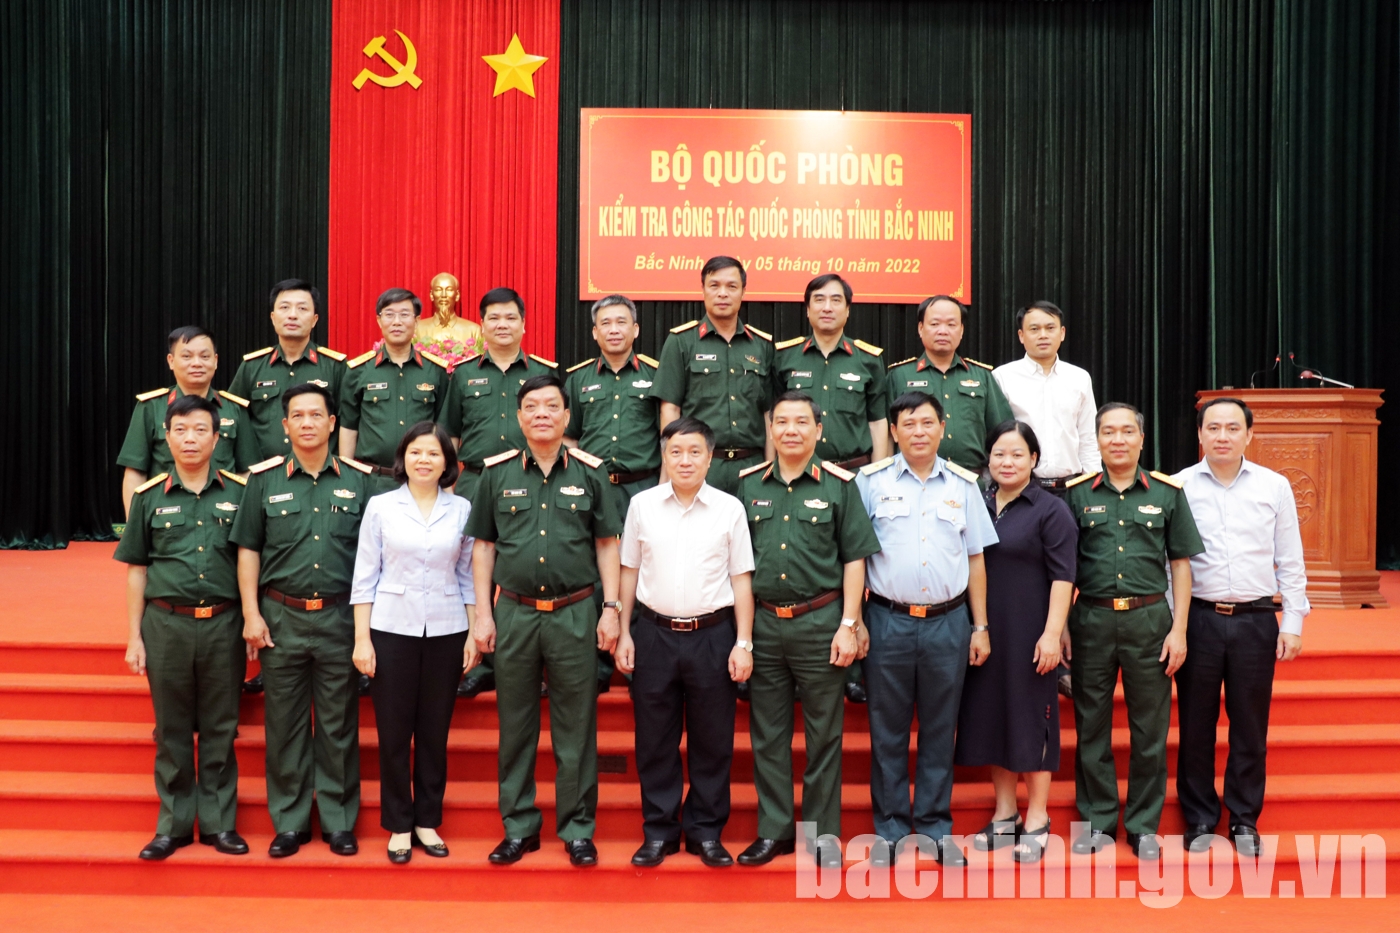 Đoàn công tác Bộ Quốc phòng kiểm tra công tác quốc phòng tại tỉnh Bắc Ninh